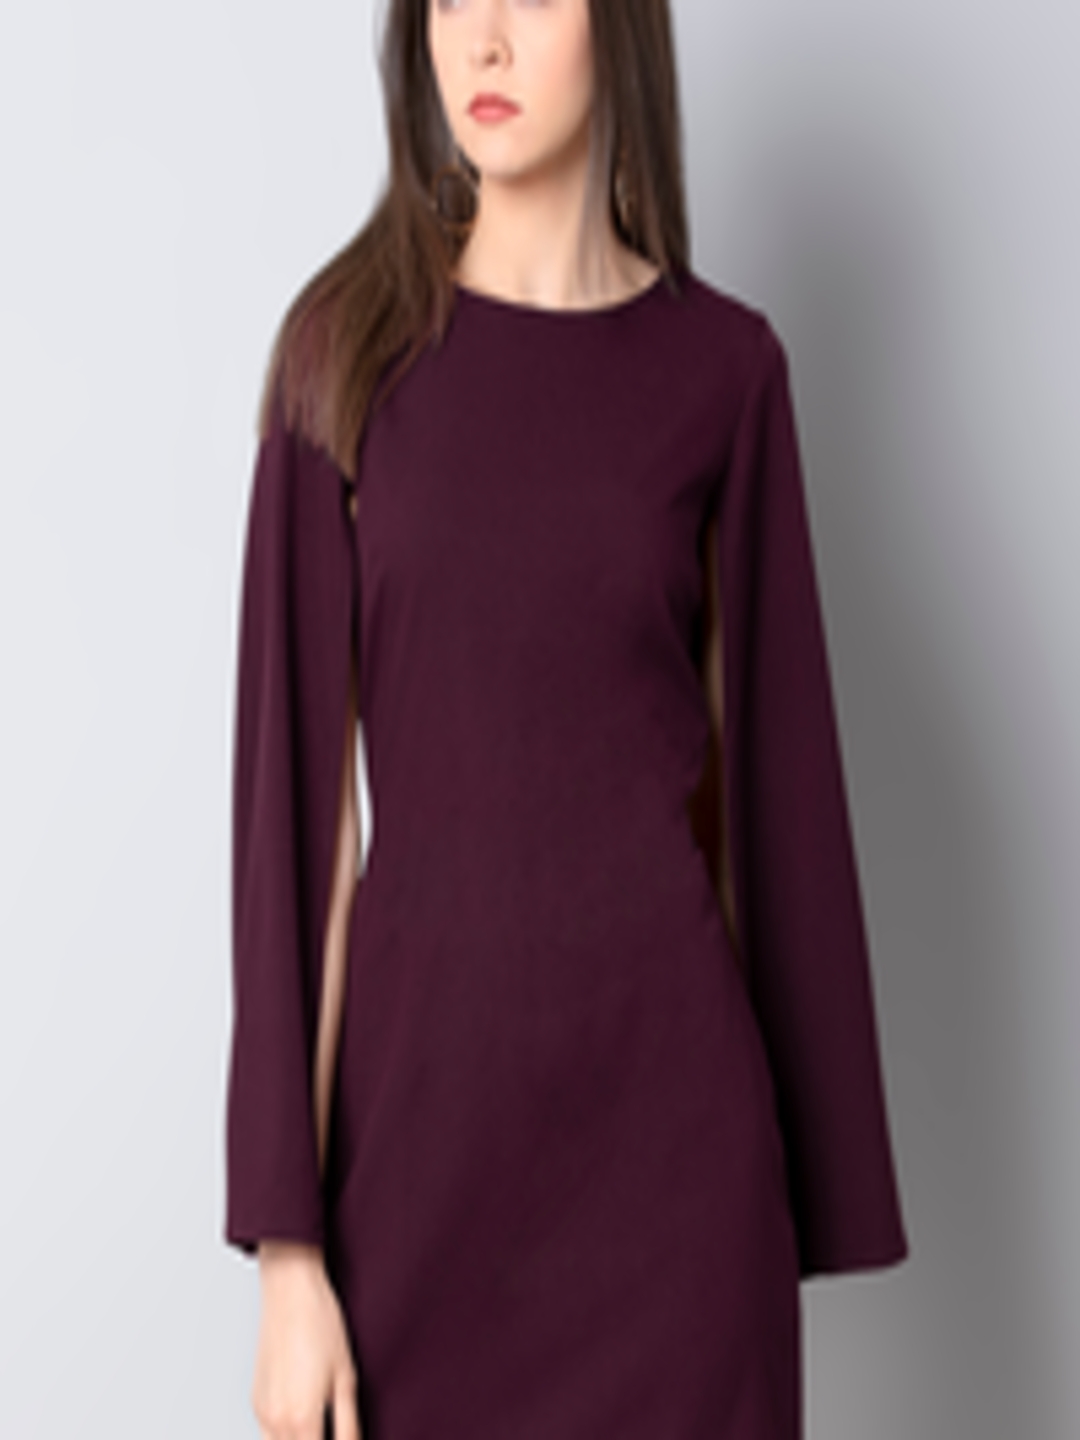 Buy Faballey Women Solid Purple Sheath Dress Dresses For Women 10837364 Myntra